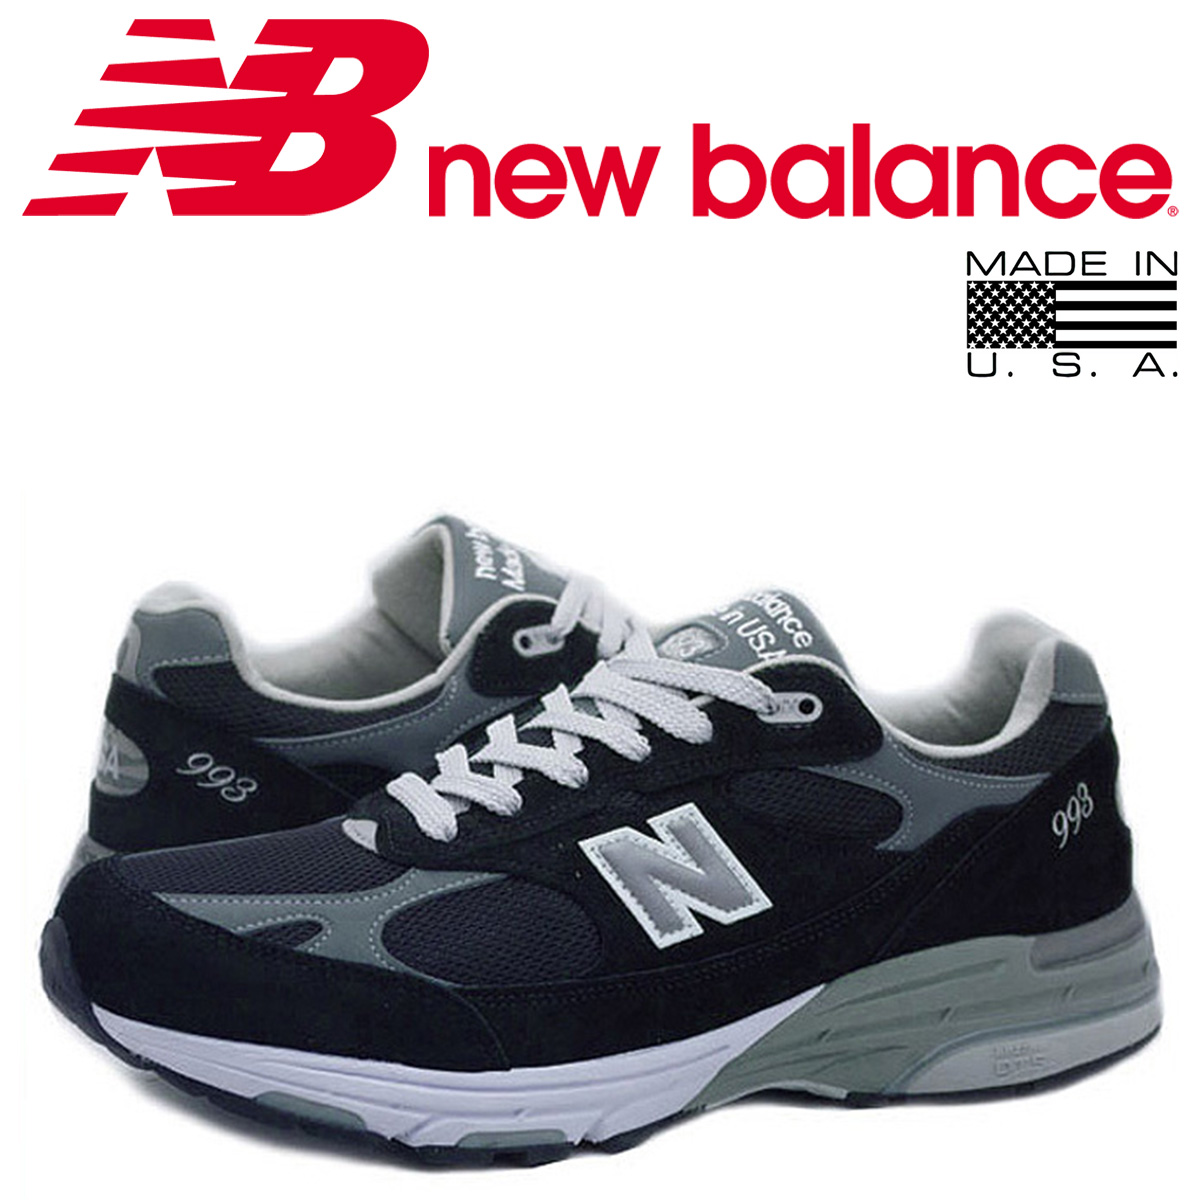 new balance 993 ayakkabı